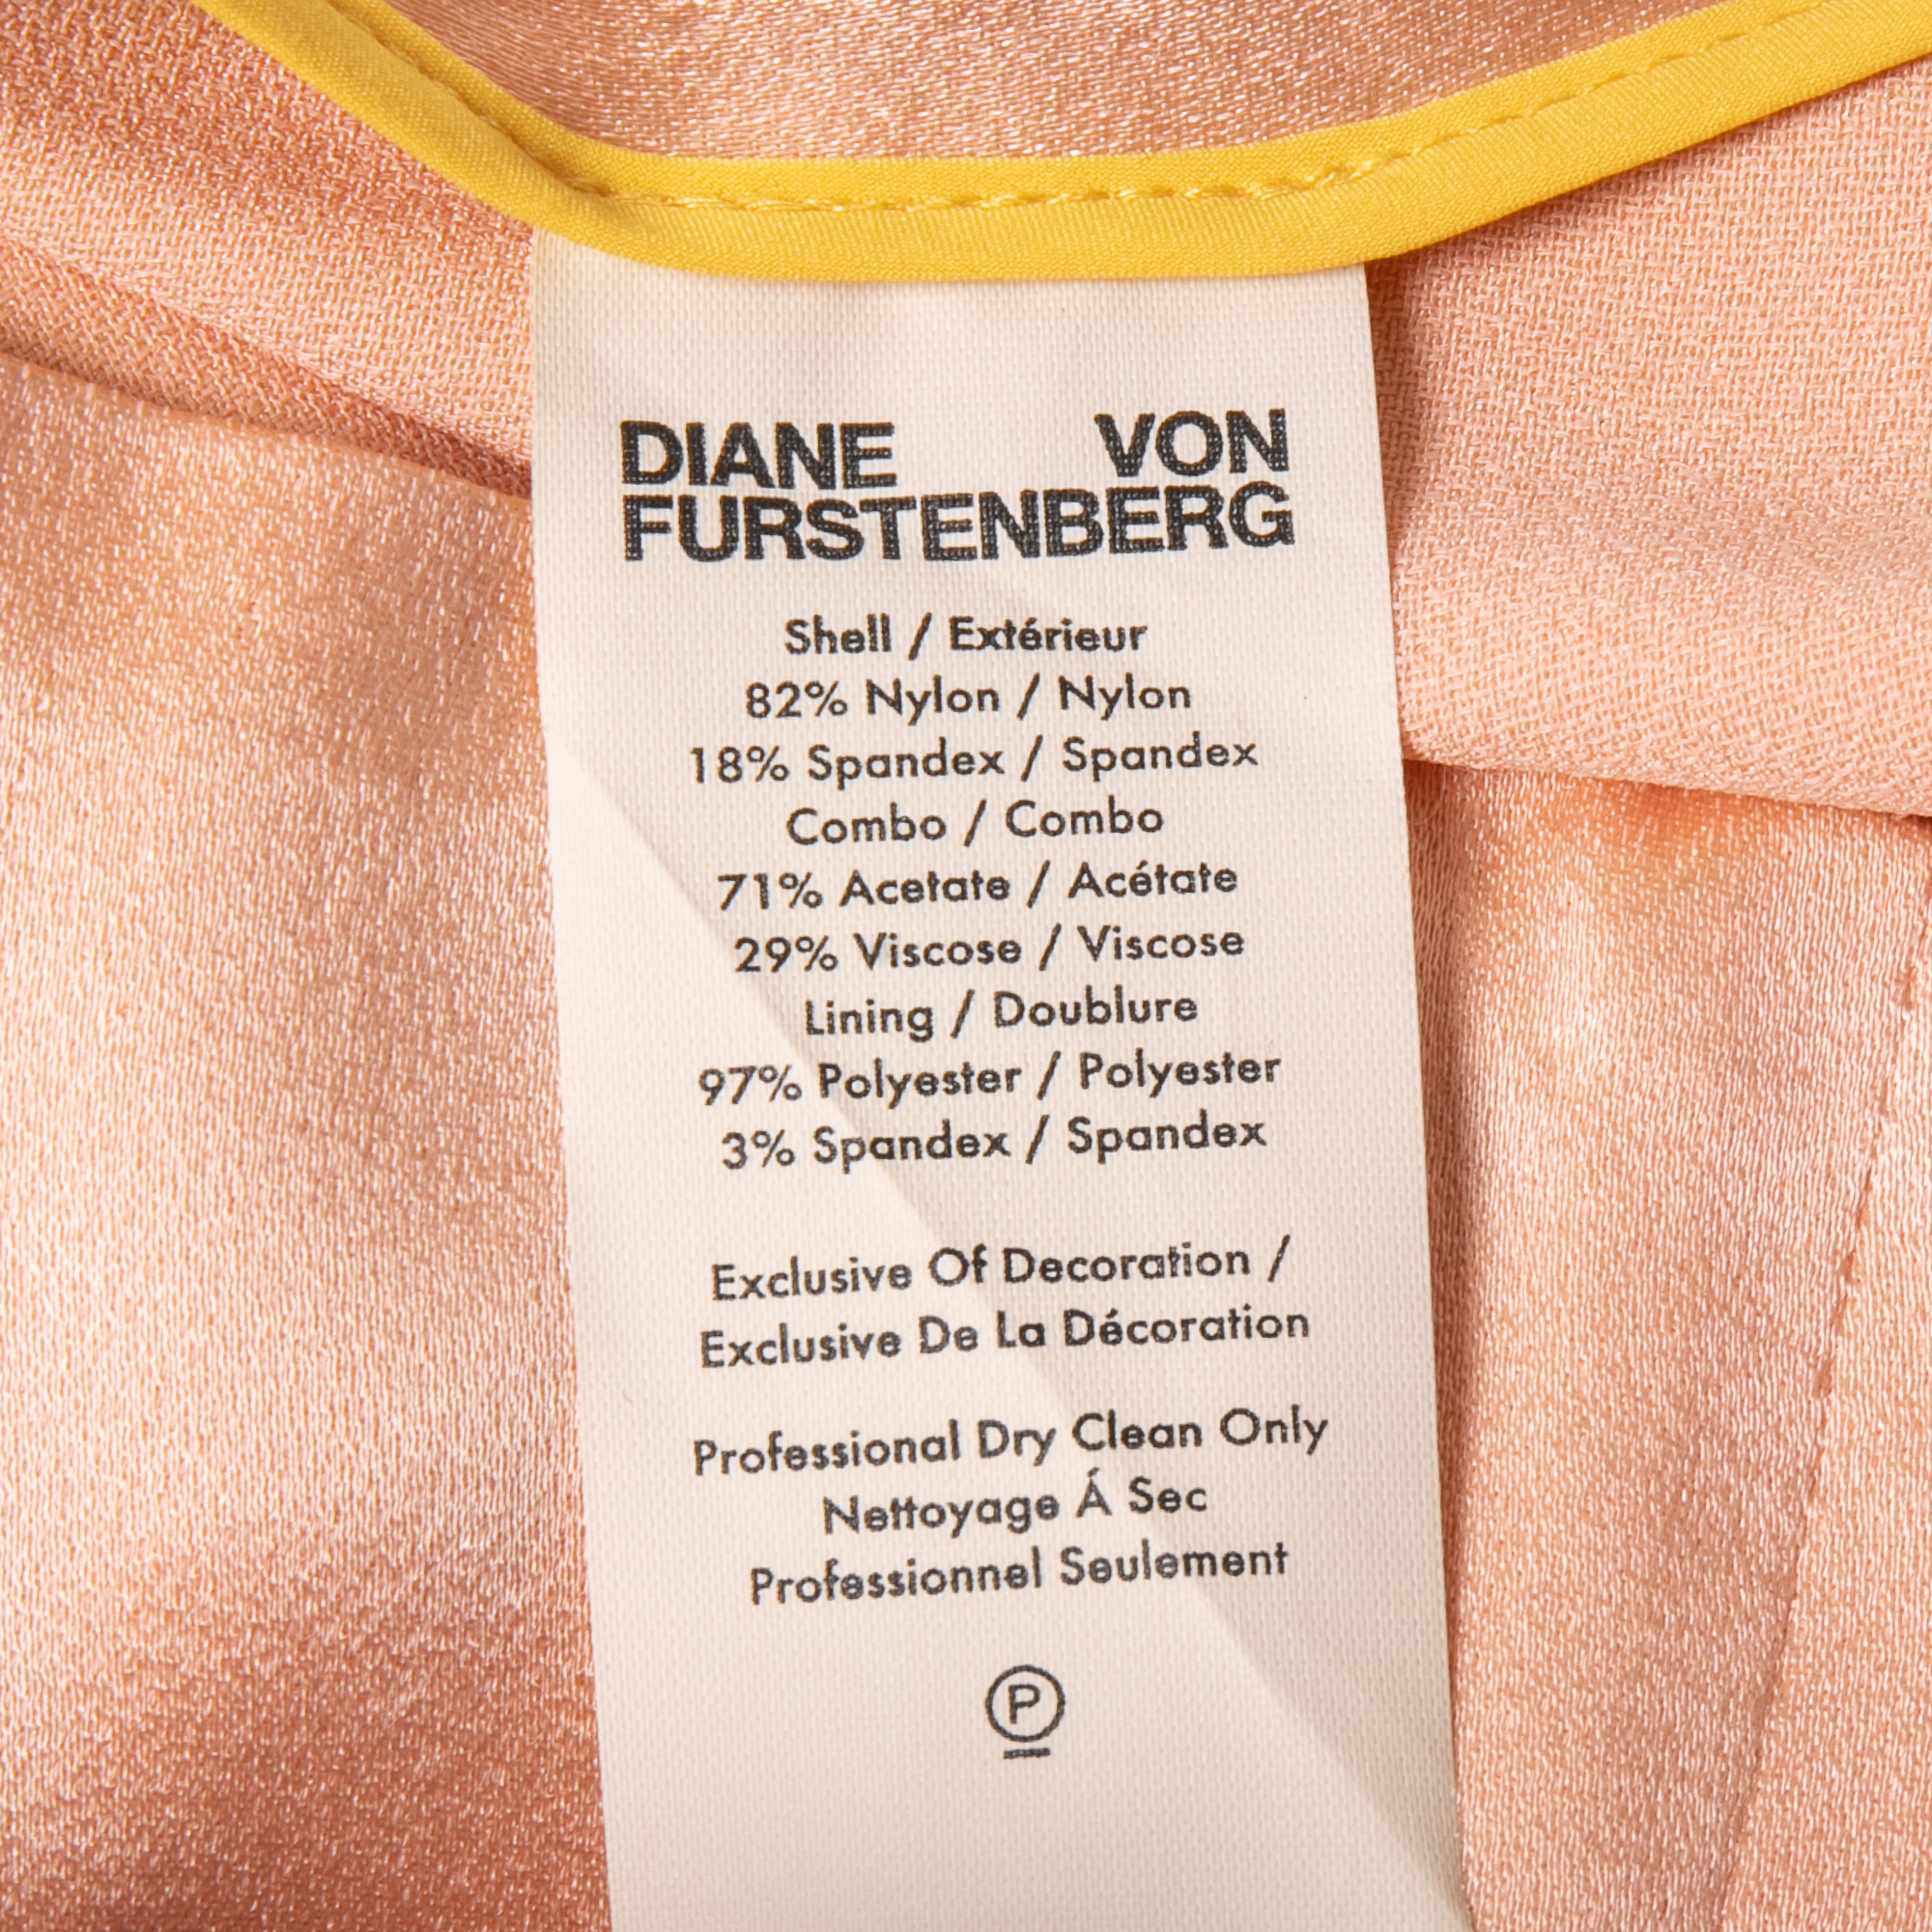 Diane Von Furstenberg Silver Sequined Satin Sleeveless Blouse S